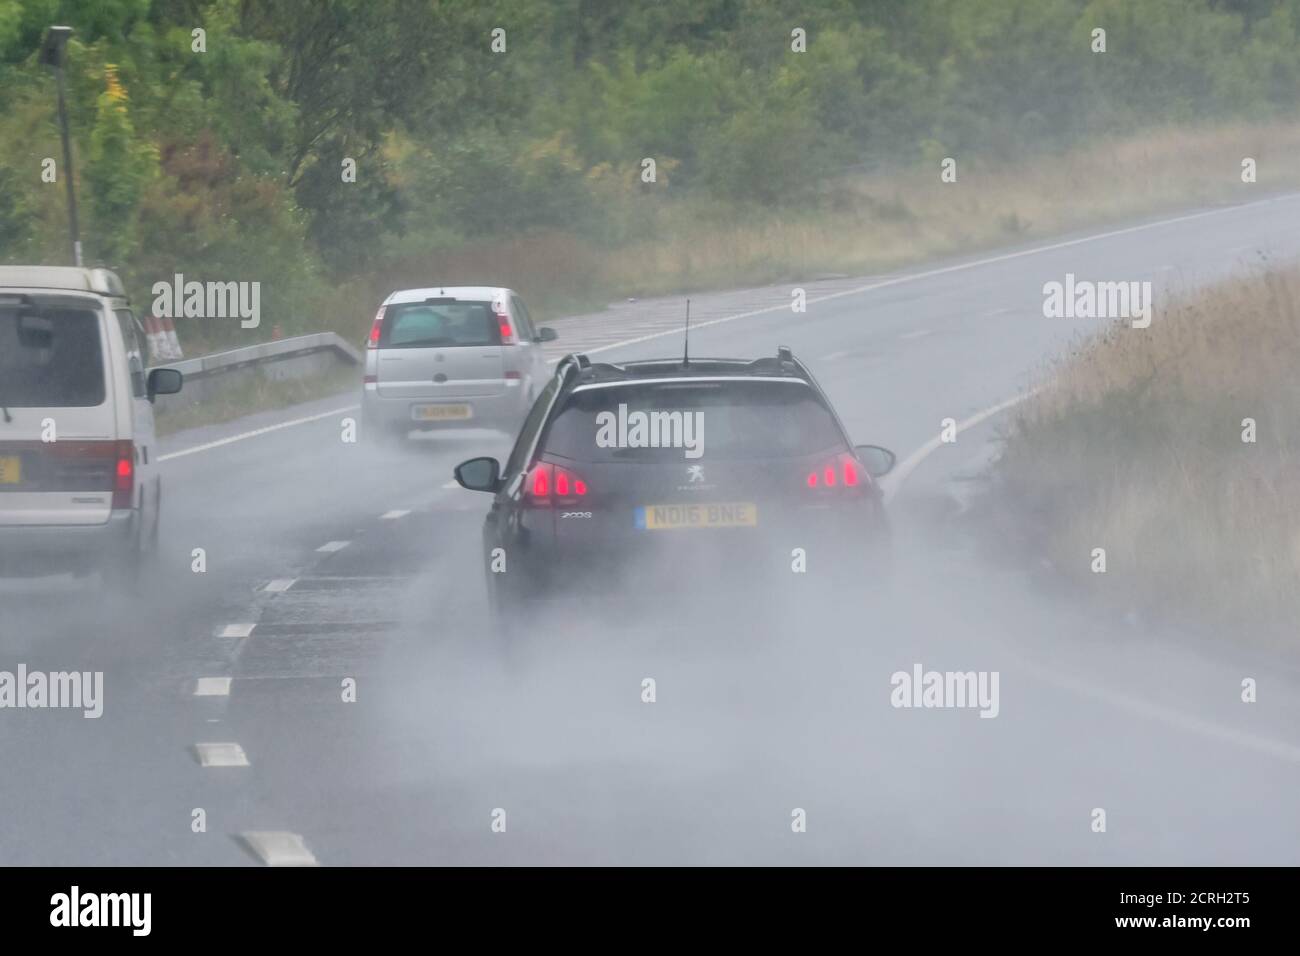 Les conducteurs qui conduisent des voitures sur une route à deux voies lors de fortes pluies avec une mauvaise visibilité en Angleterre, au Royaume-Uni. Mauvais temps et route humide et dangereuse en cas de pluie. Banque D'Images